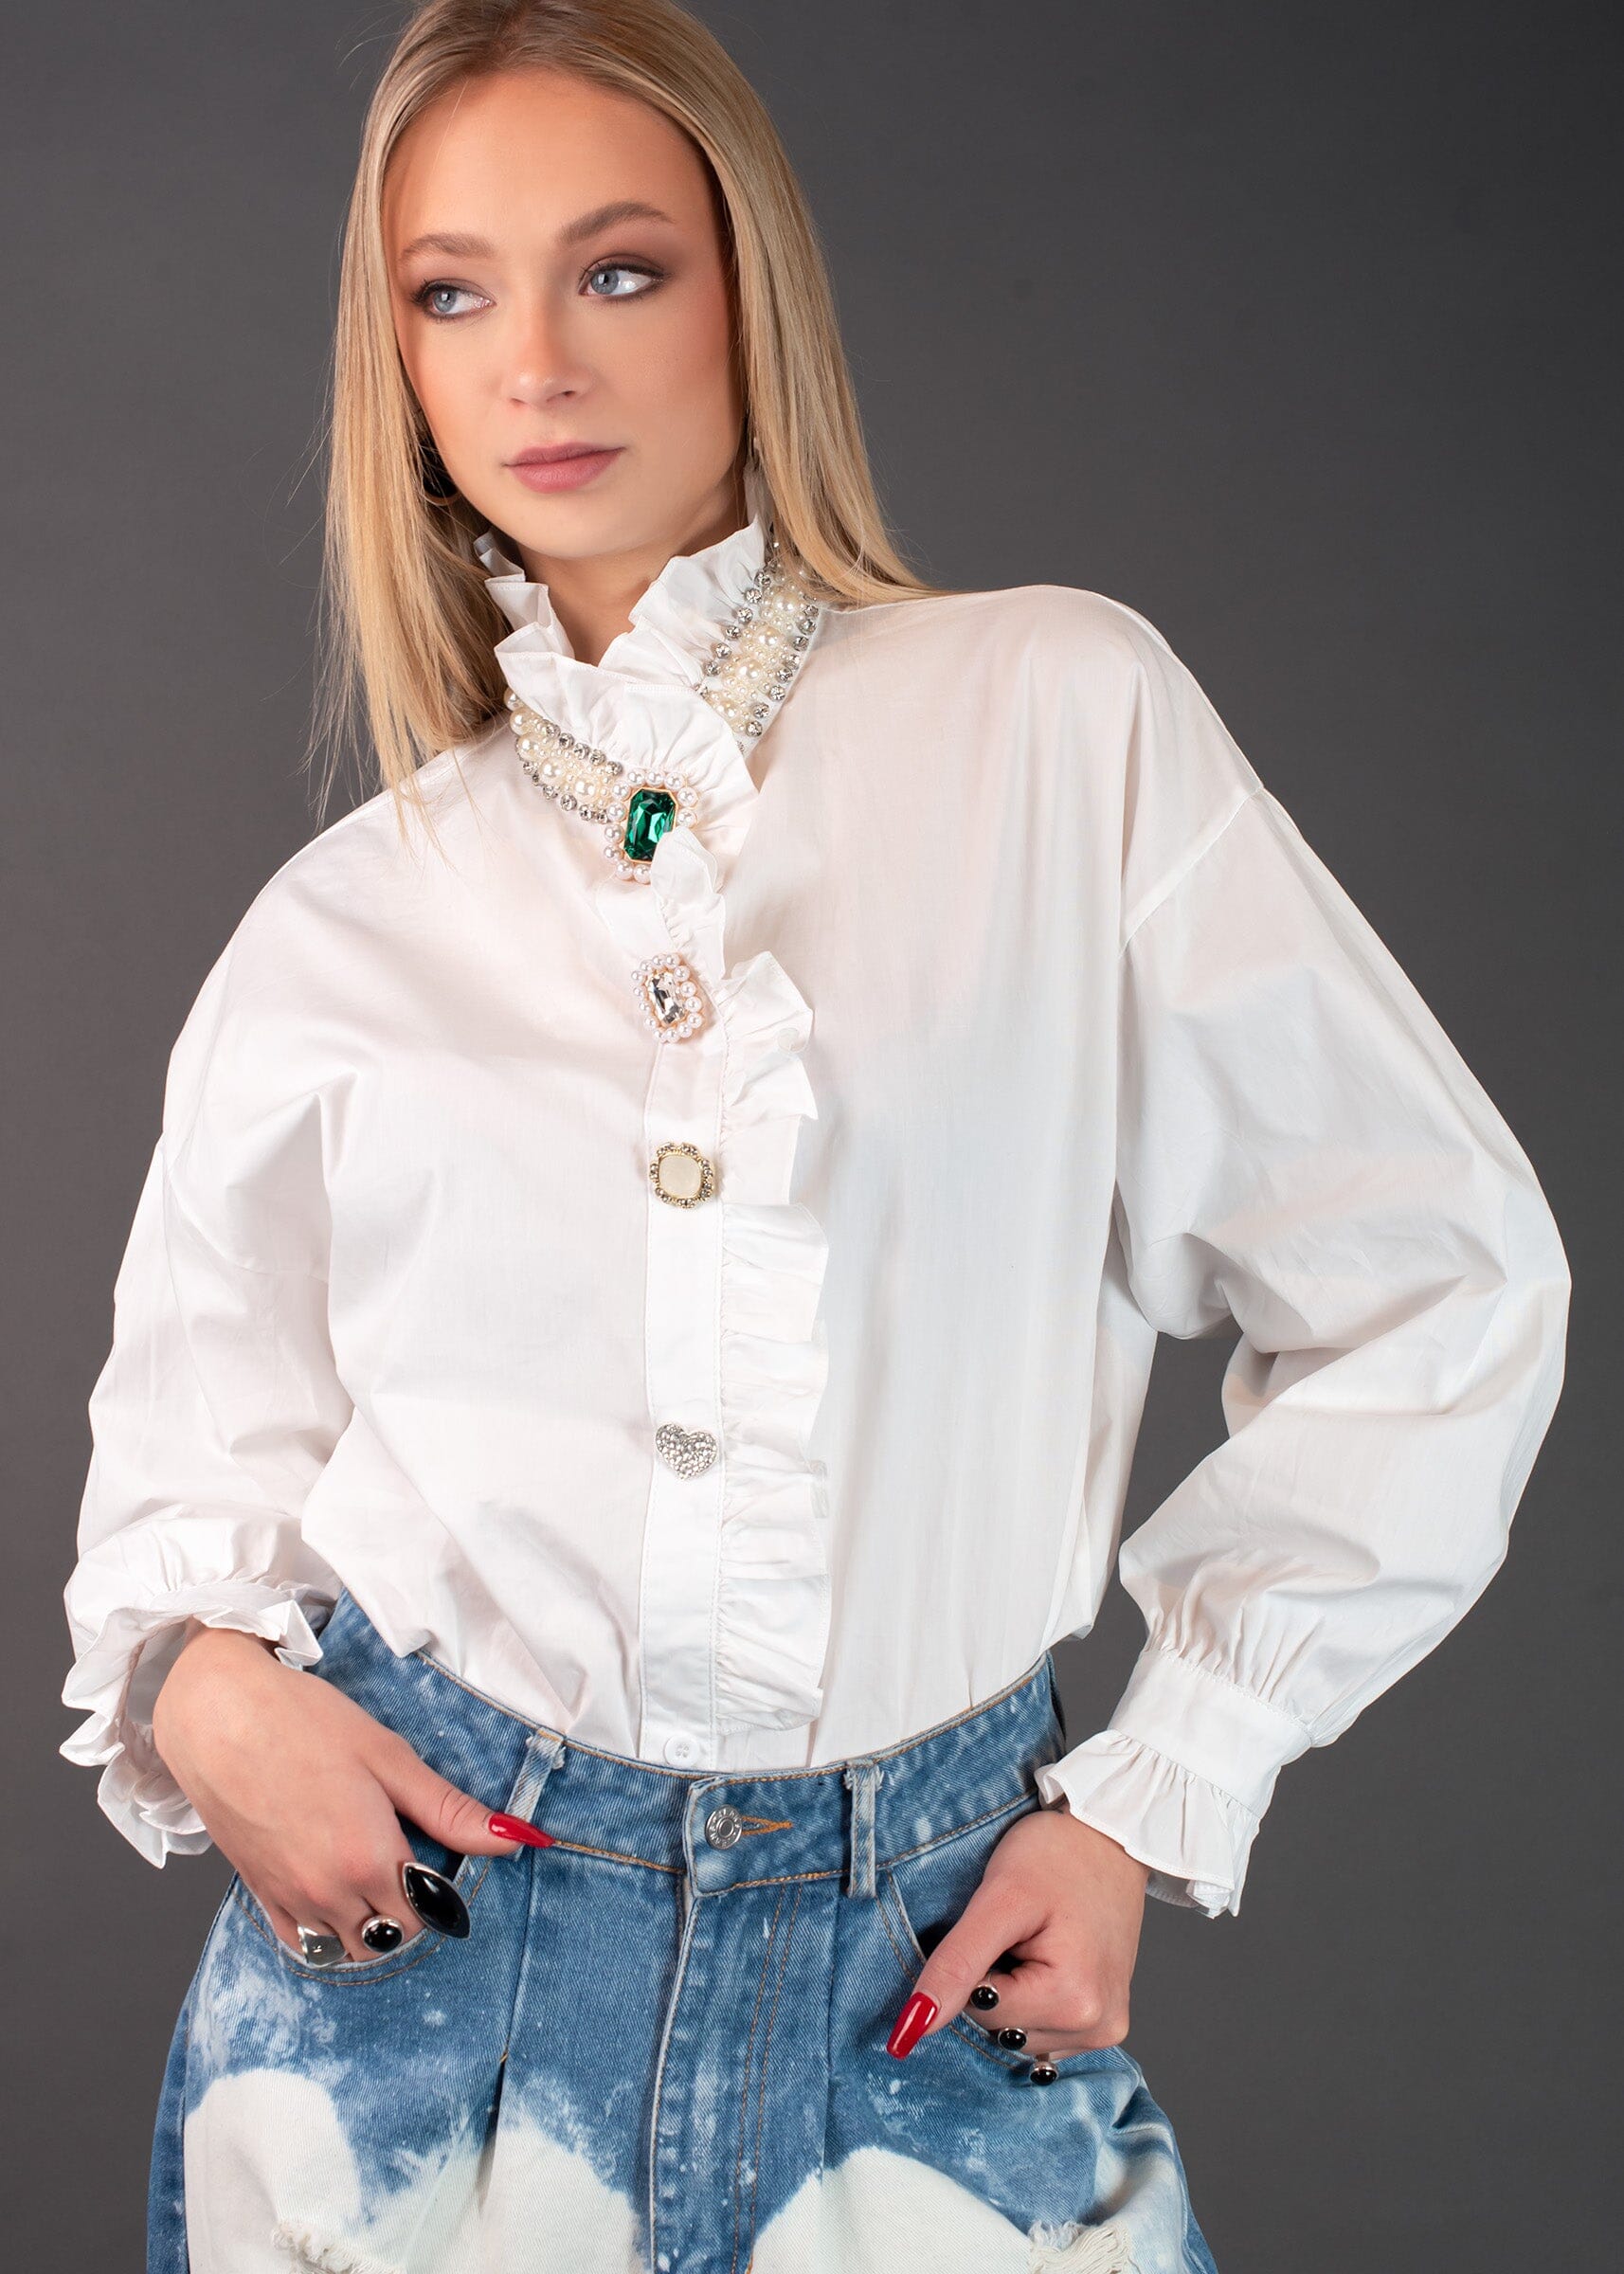 Avant Garde Embellished Dress Shirt Blouses Kate Hewko White One Size 